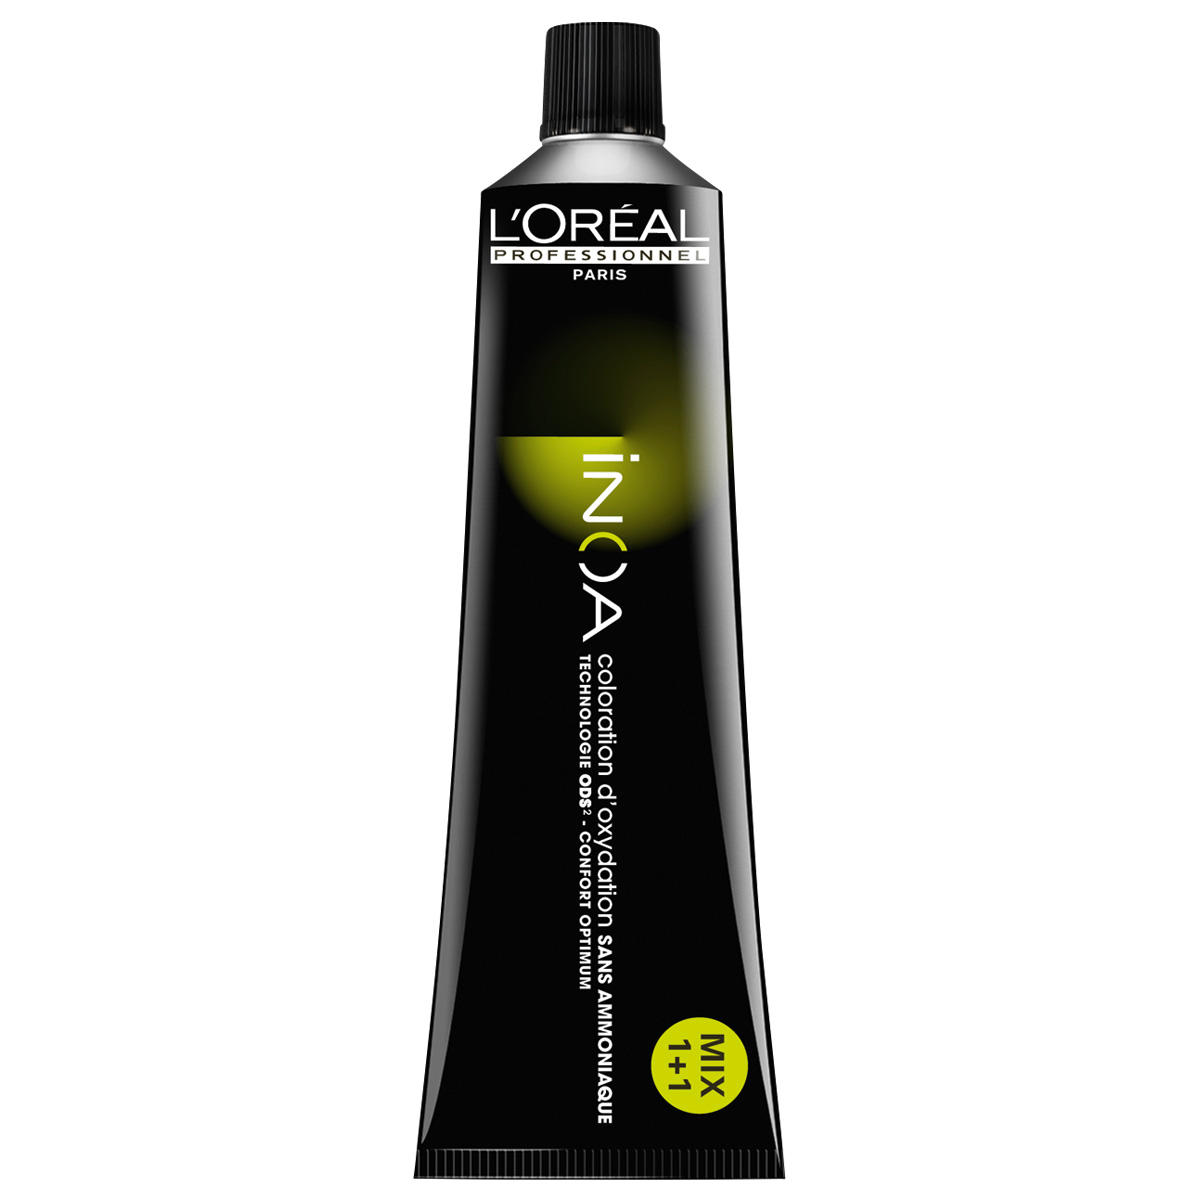 L'Oréal Professionnel Paris Coloration 3 Donkerbruin, tube 60 ml